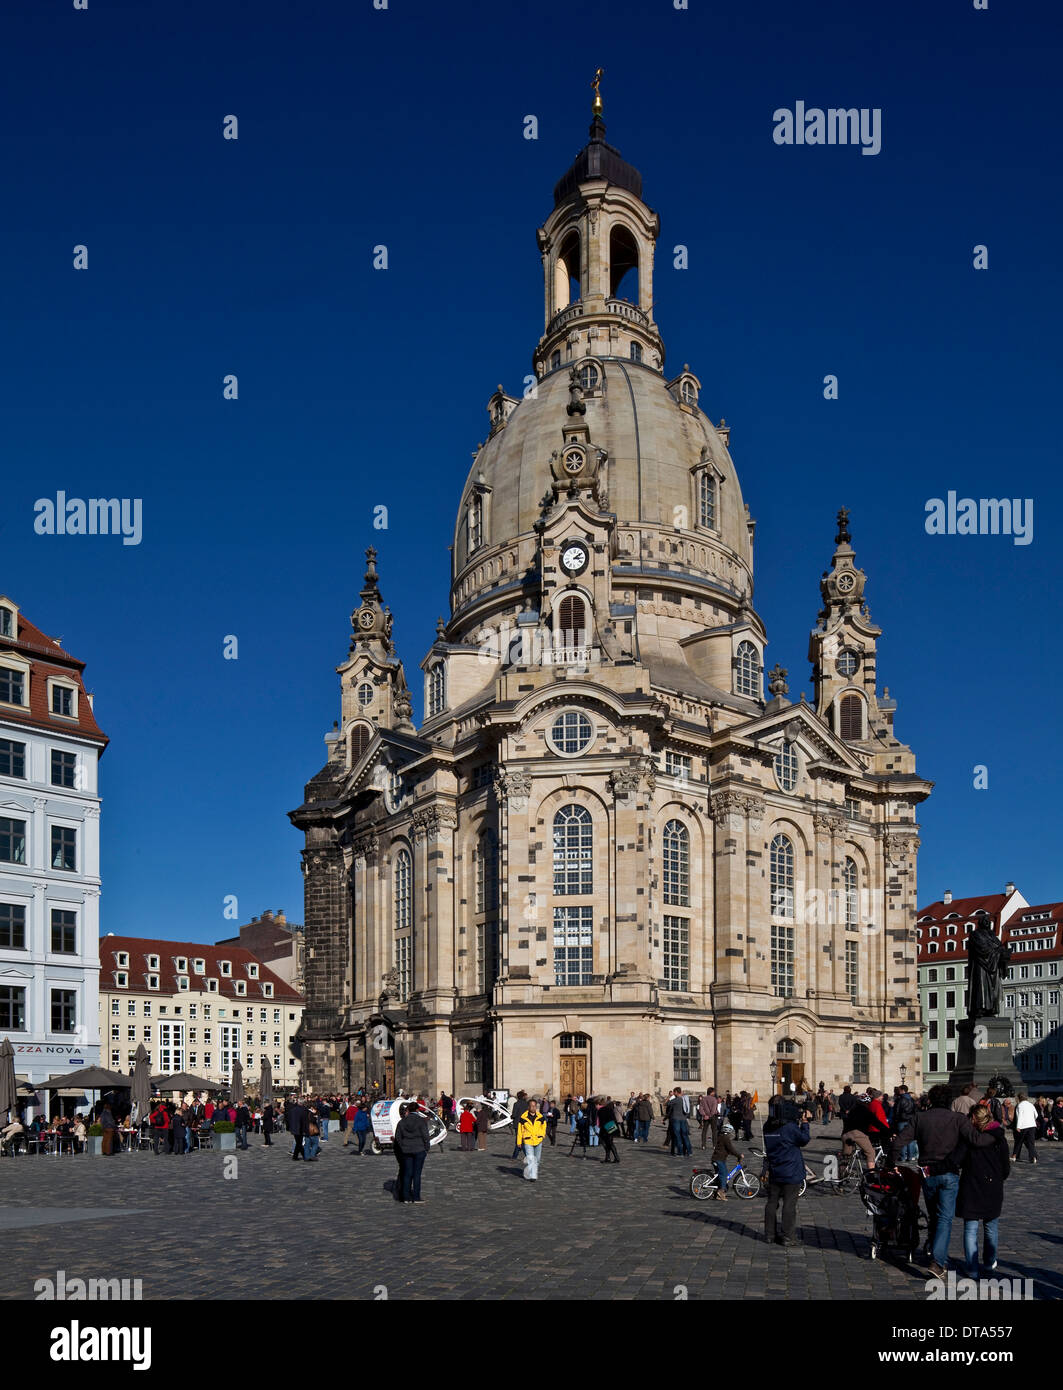 A Dresda, Frauenkirche am Neumarkt Foto Stock